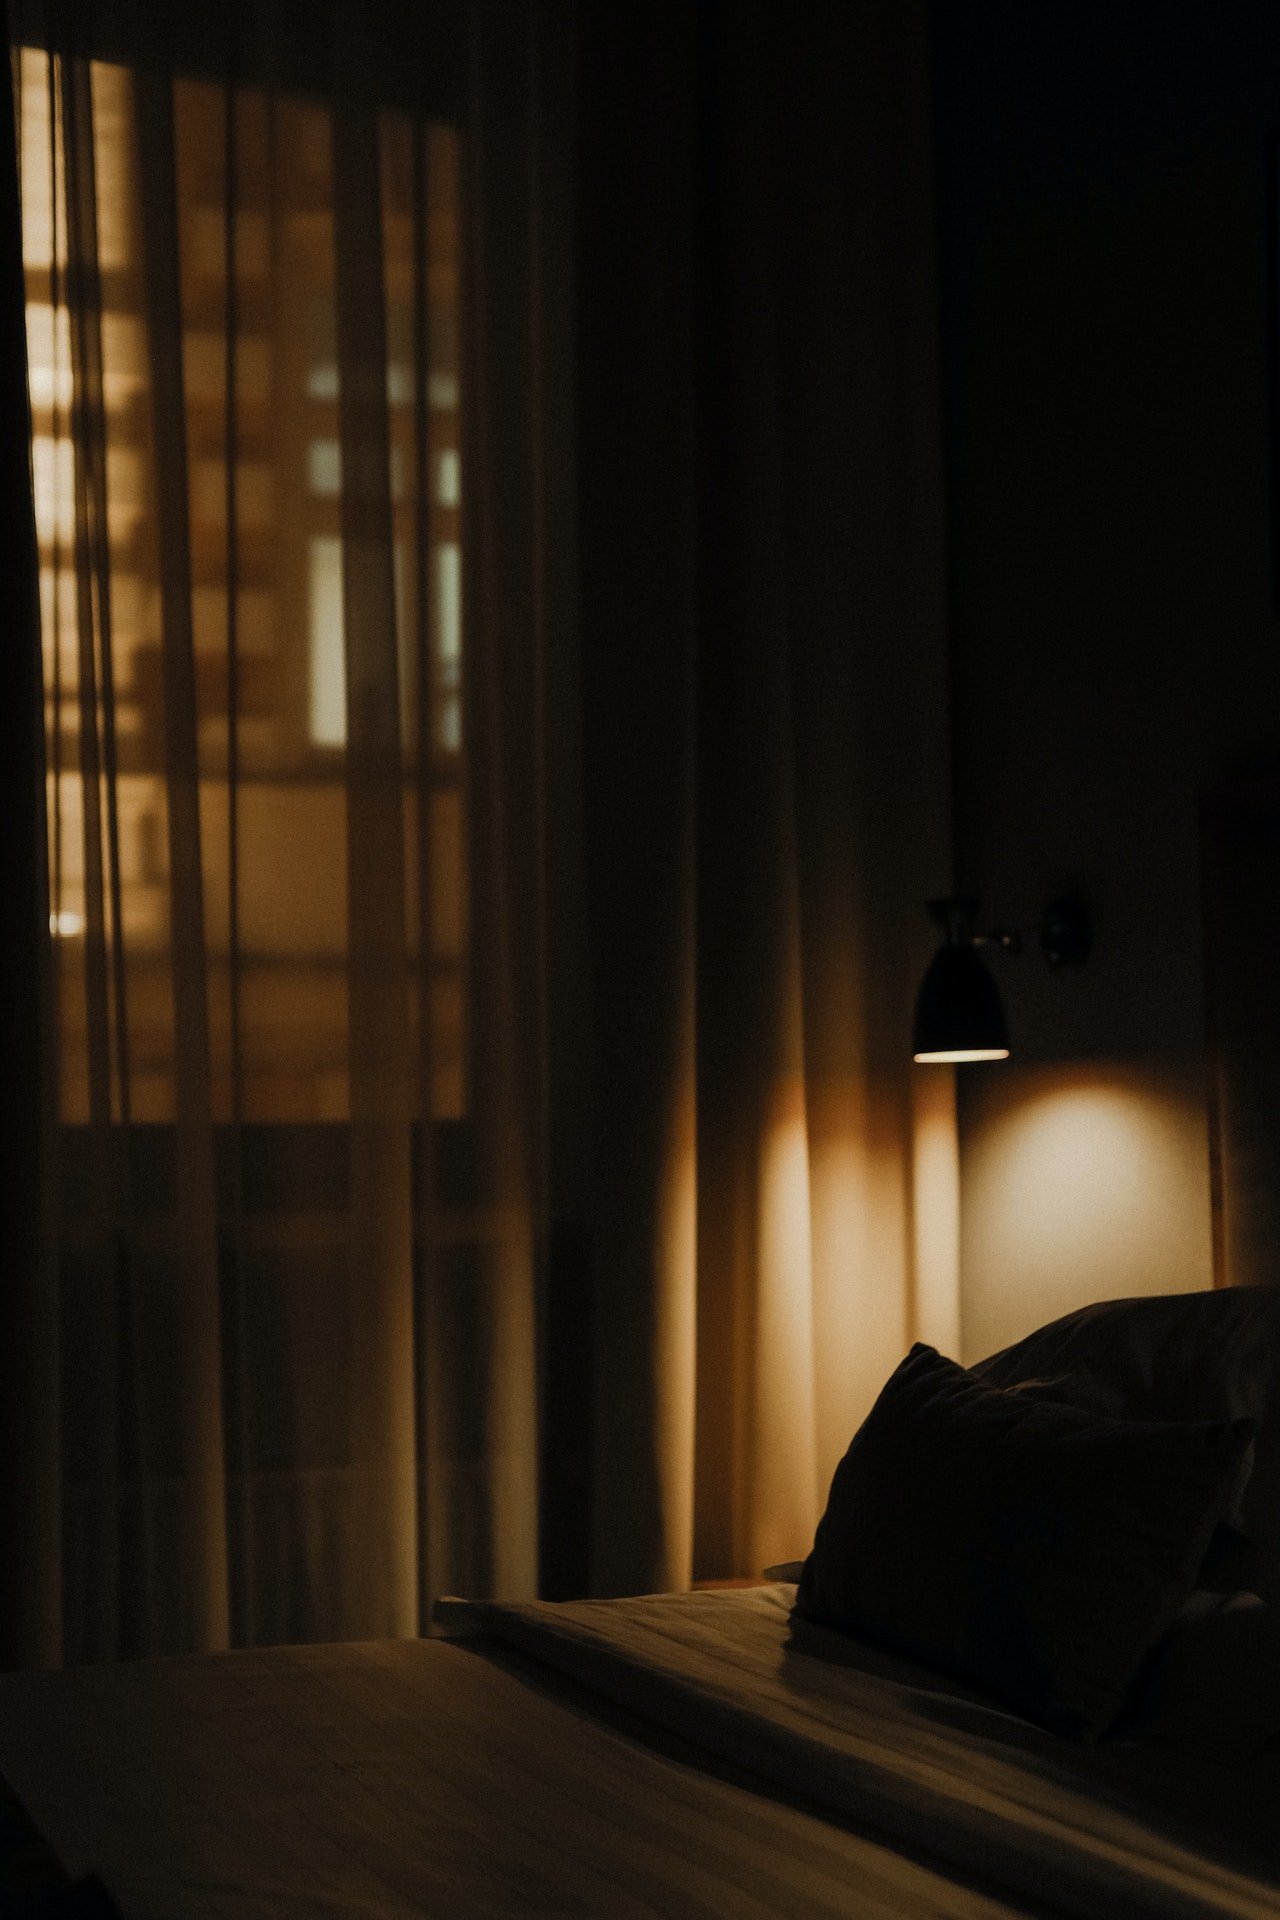 Una cama dentro de una habitación oscura con cortinas. | Foto: Pexels